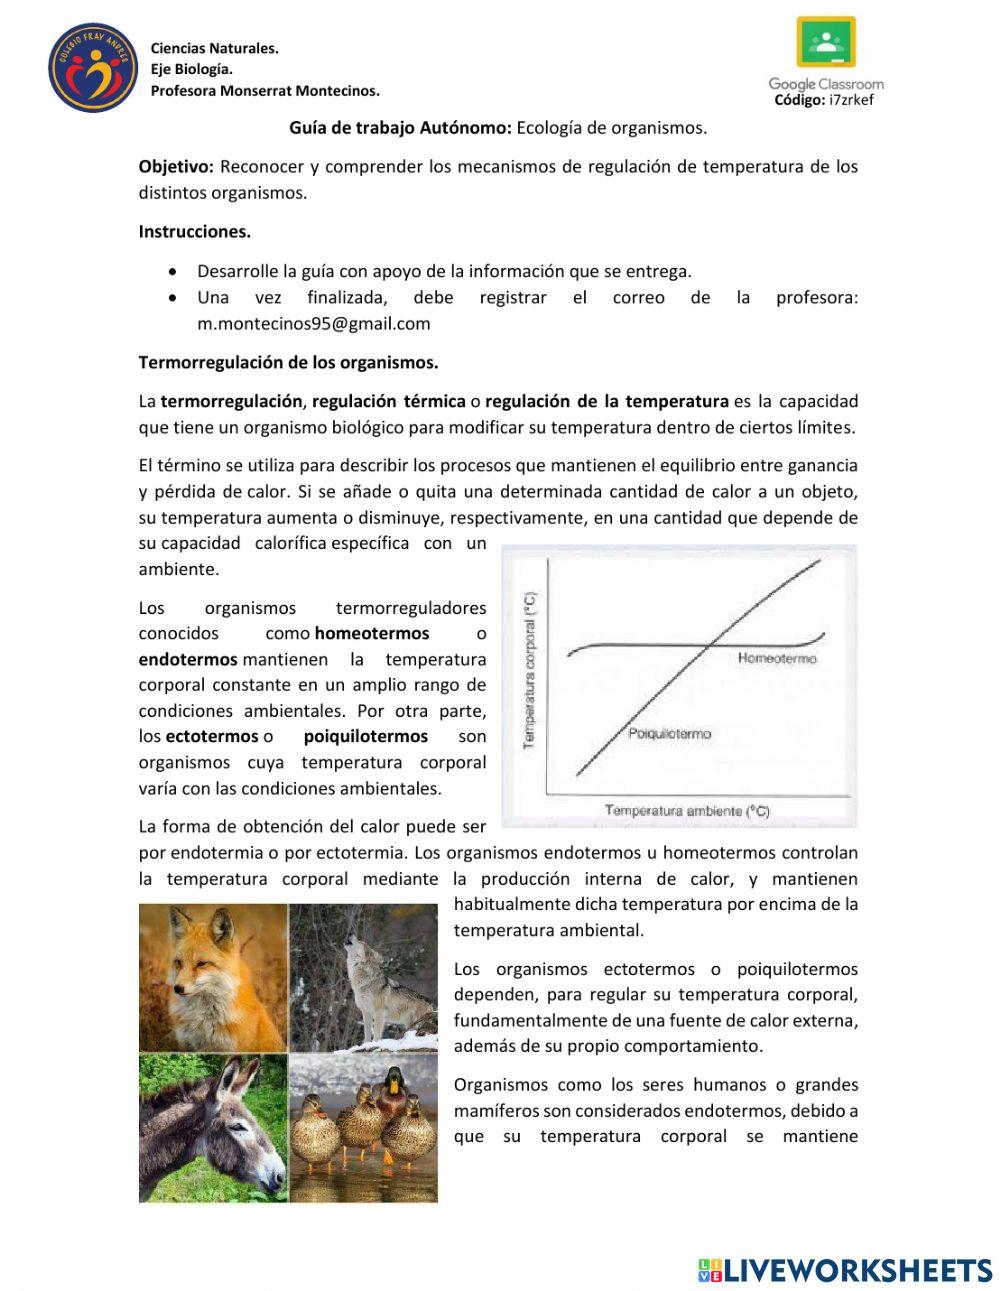 Guía trabajo autónomo: Ecología de organismos.